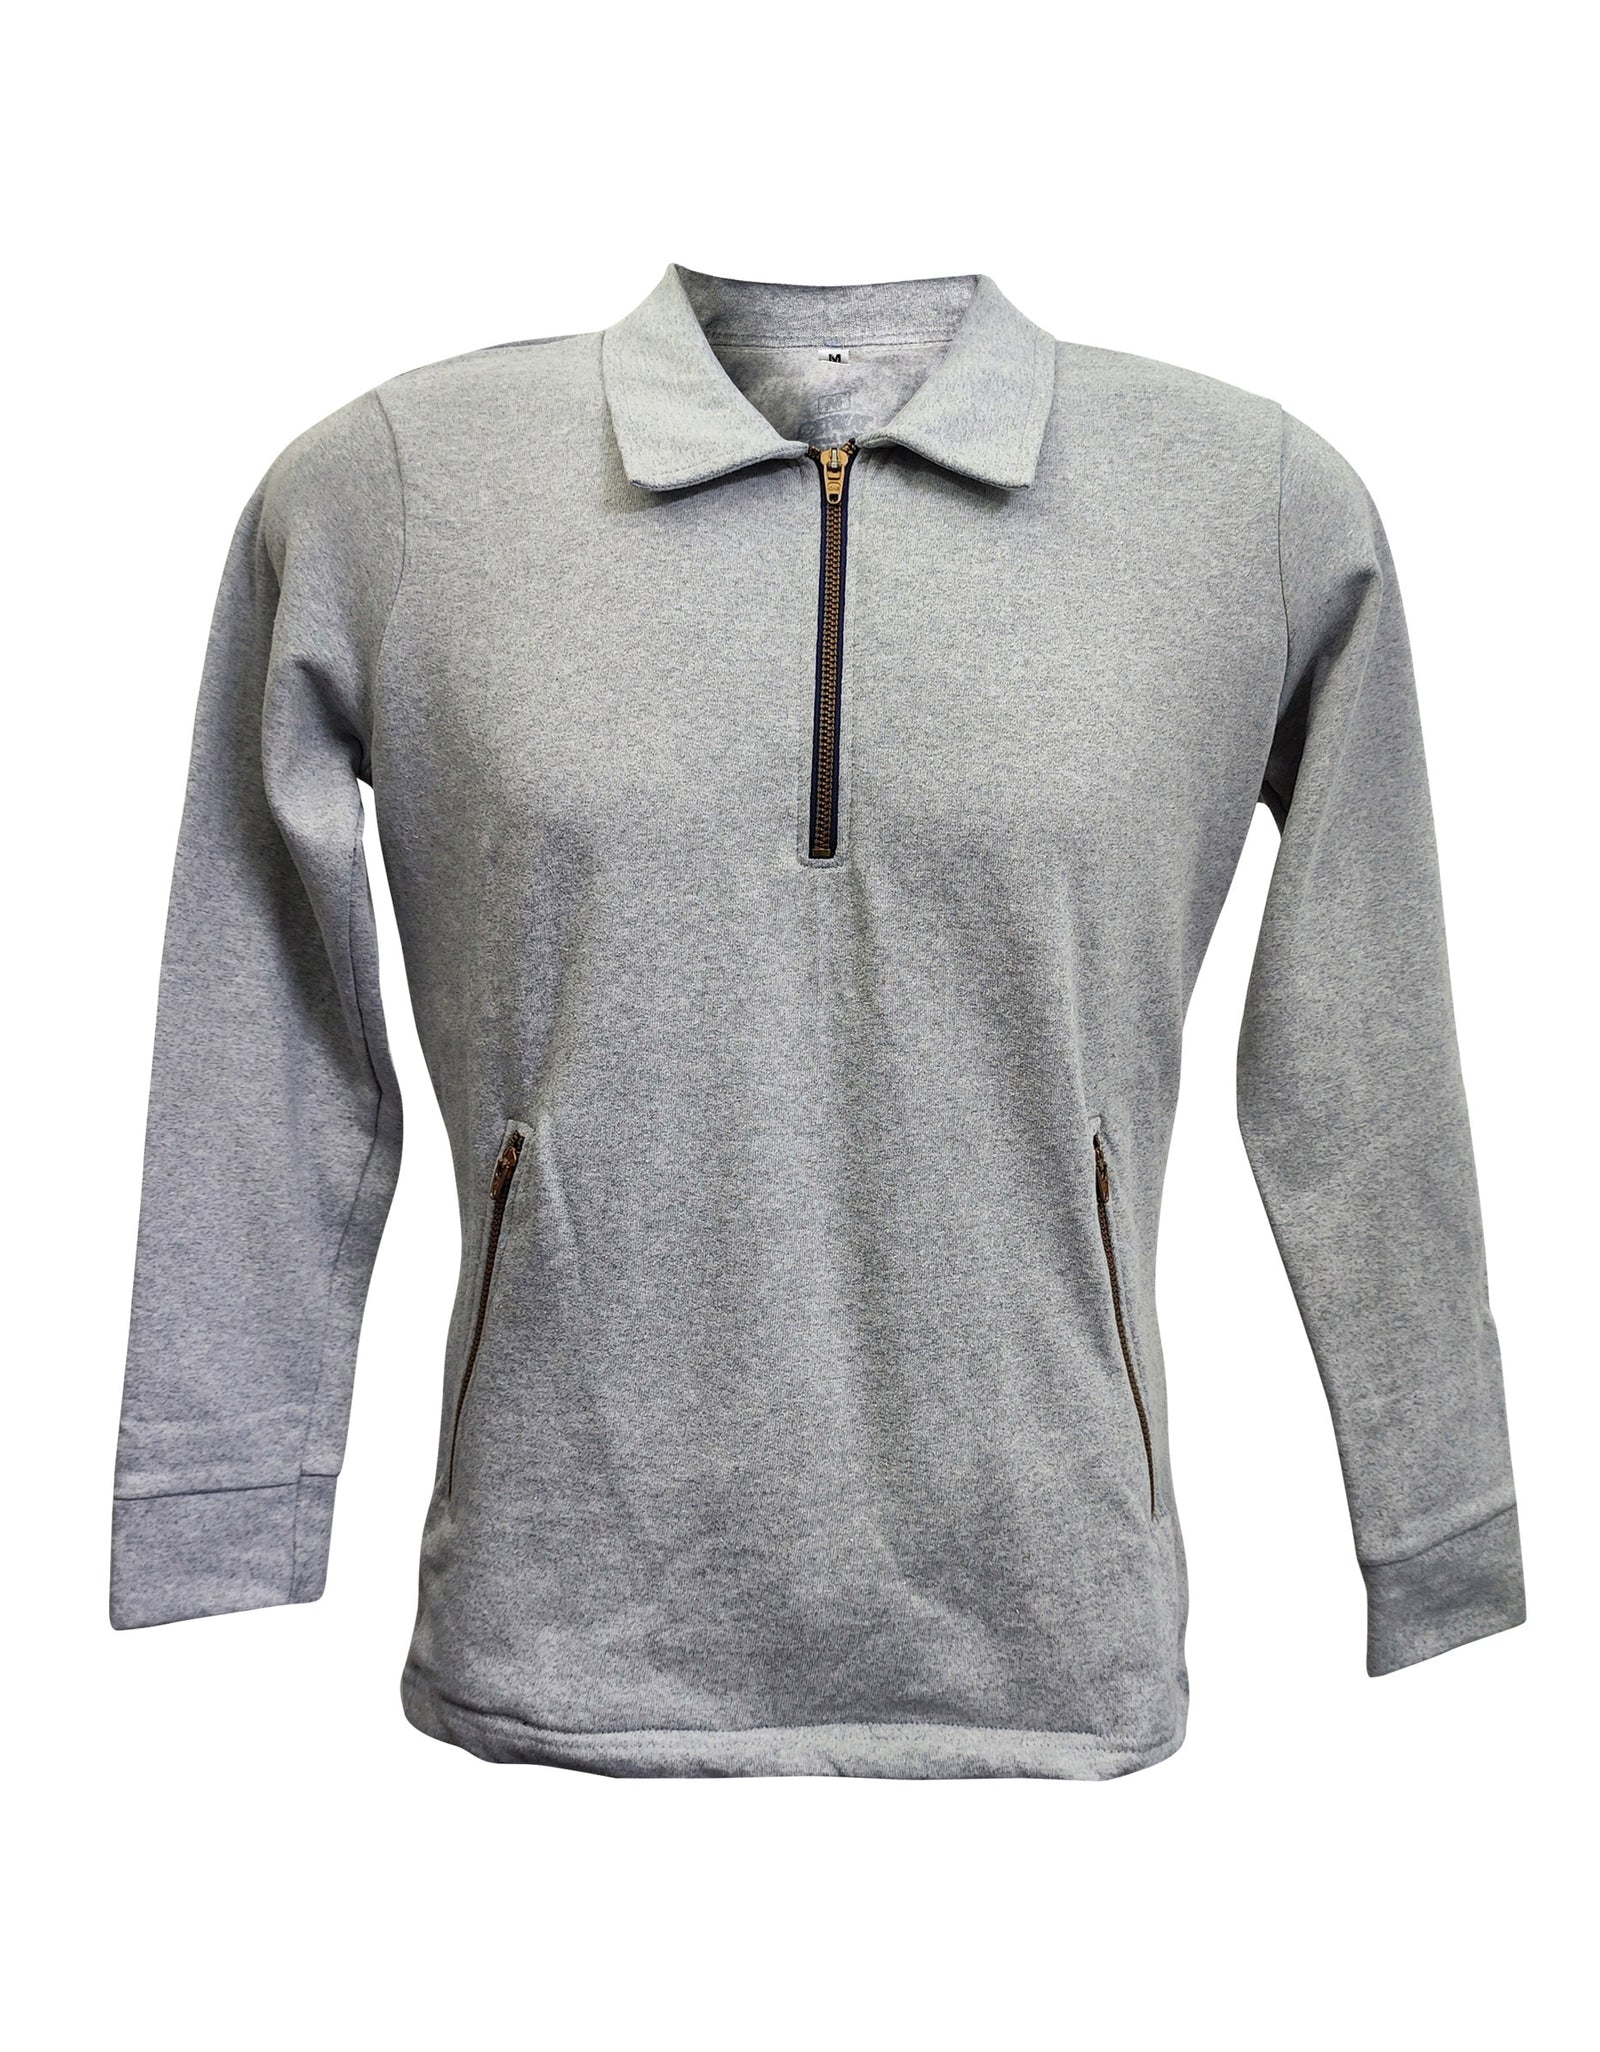 Sweatshirt for Women  - Grey Melange